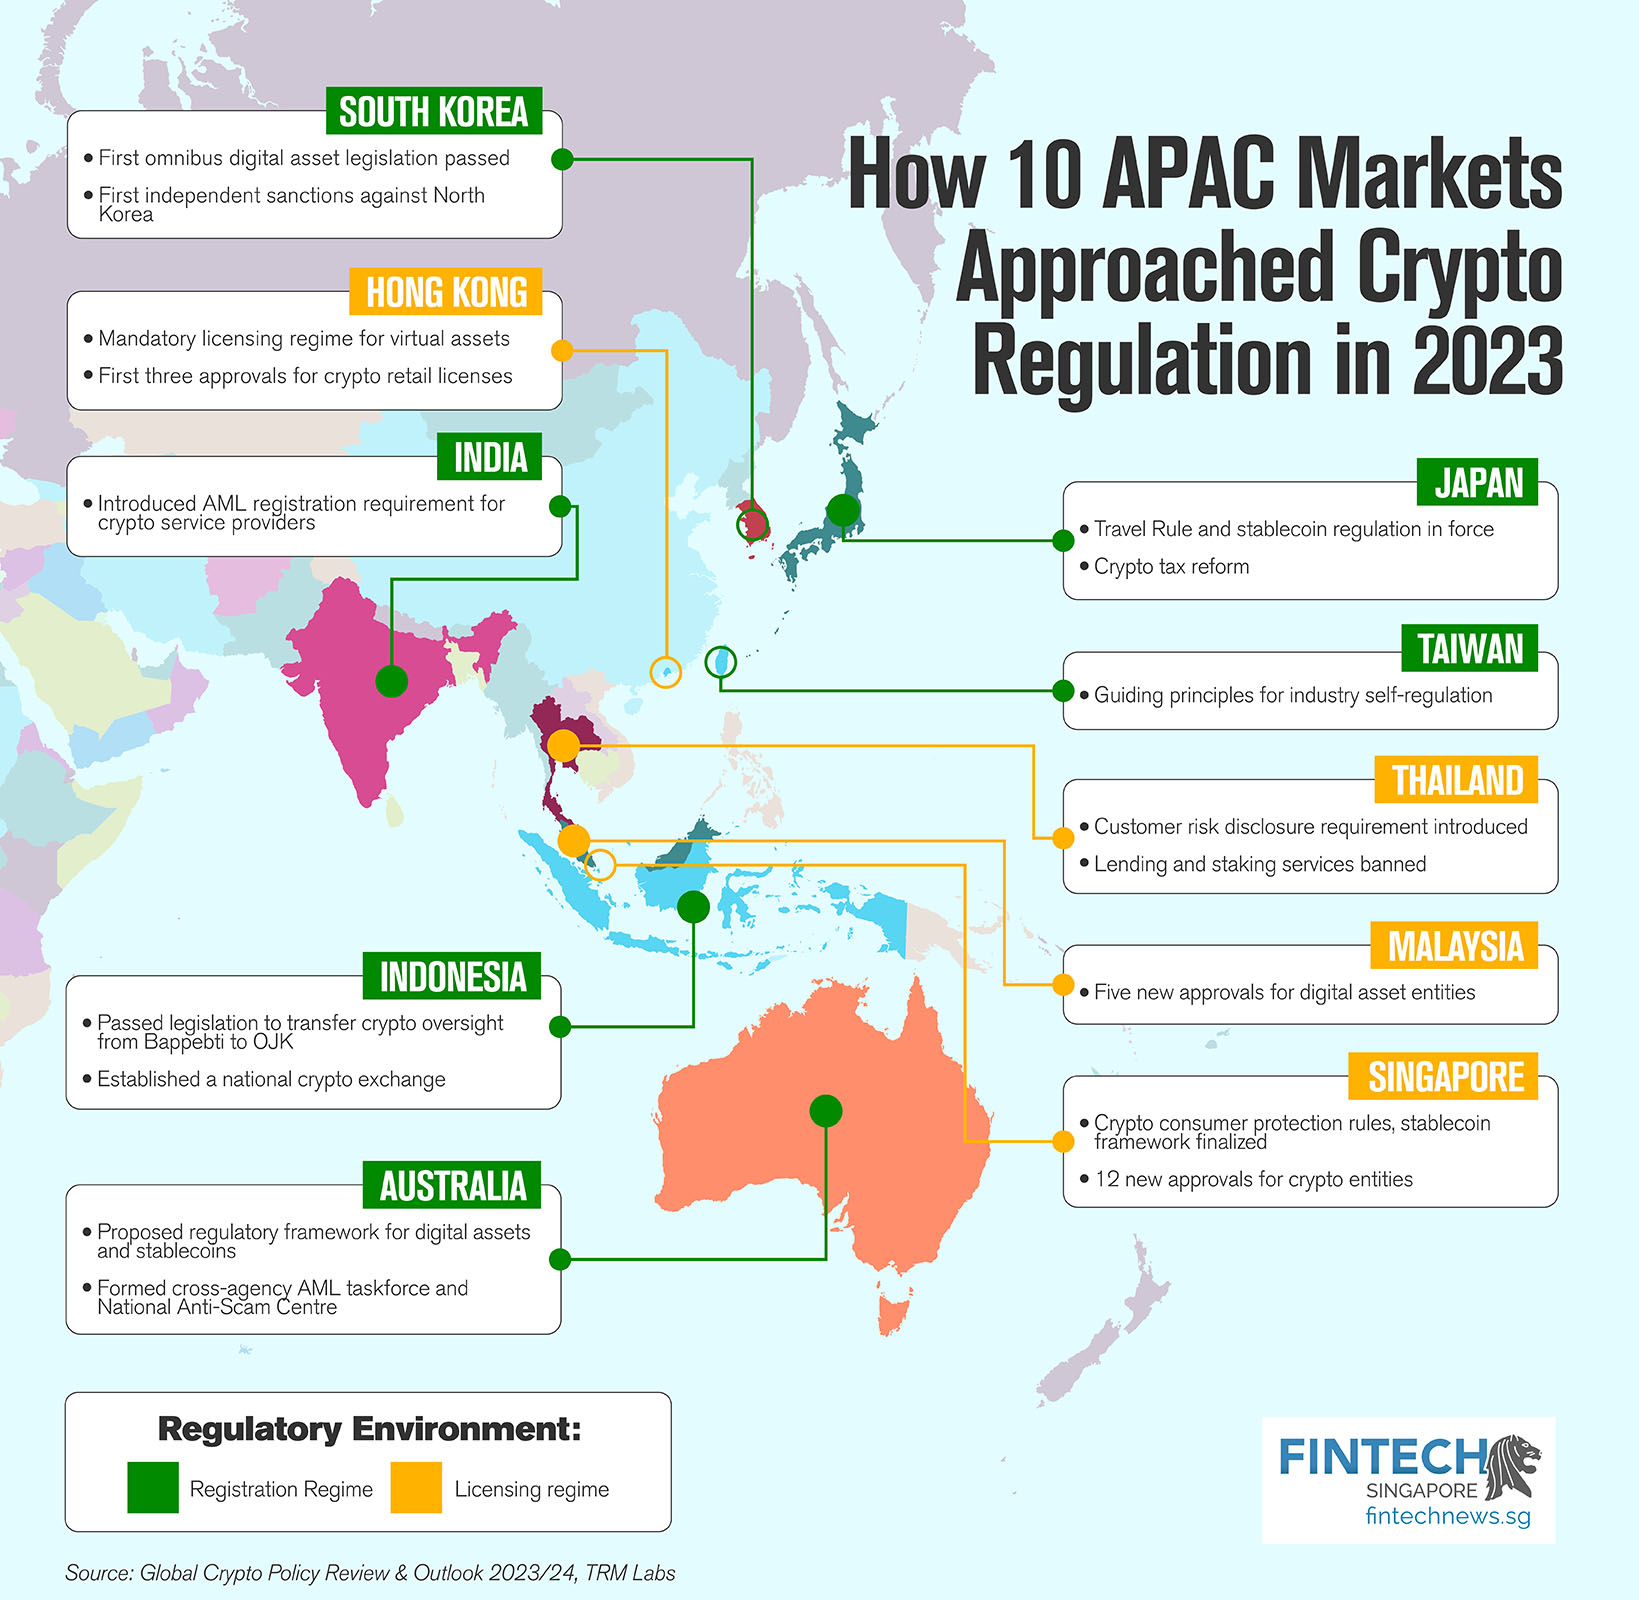 アジア太平洋地域の 10 の市場が仮想通貨規制にどのように取り組んでいるか